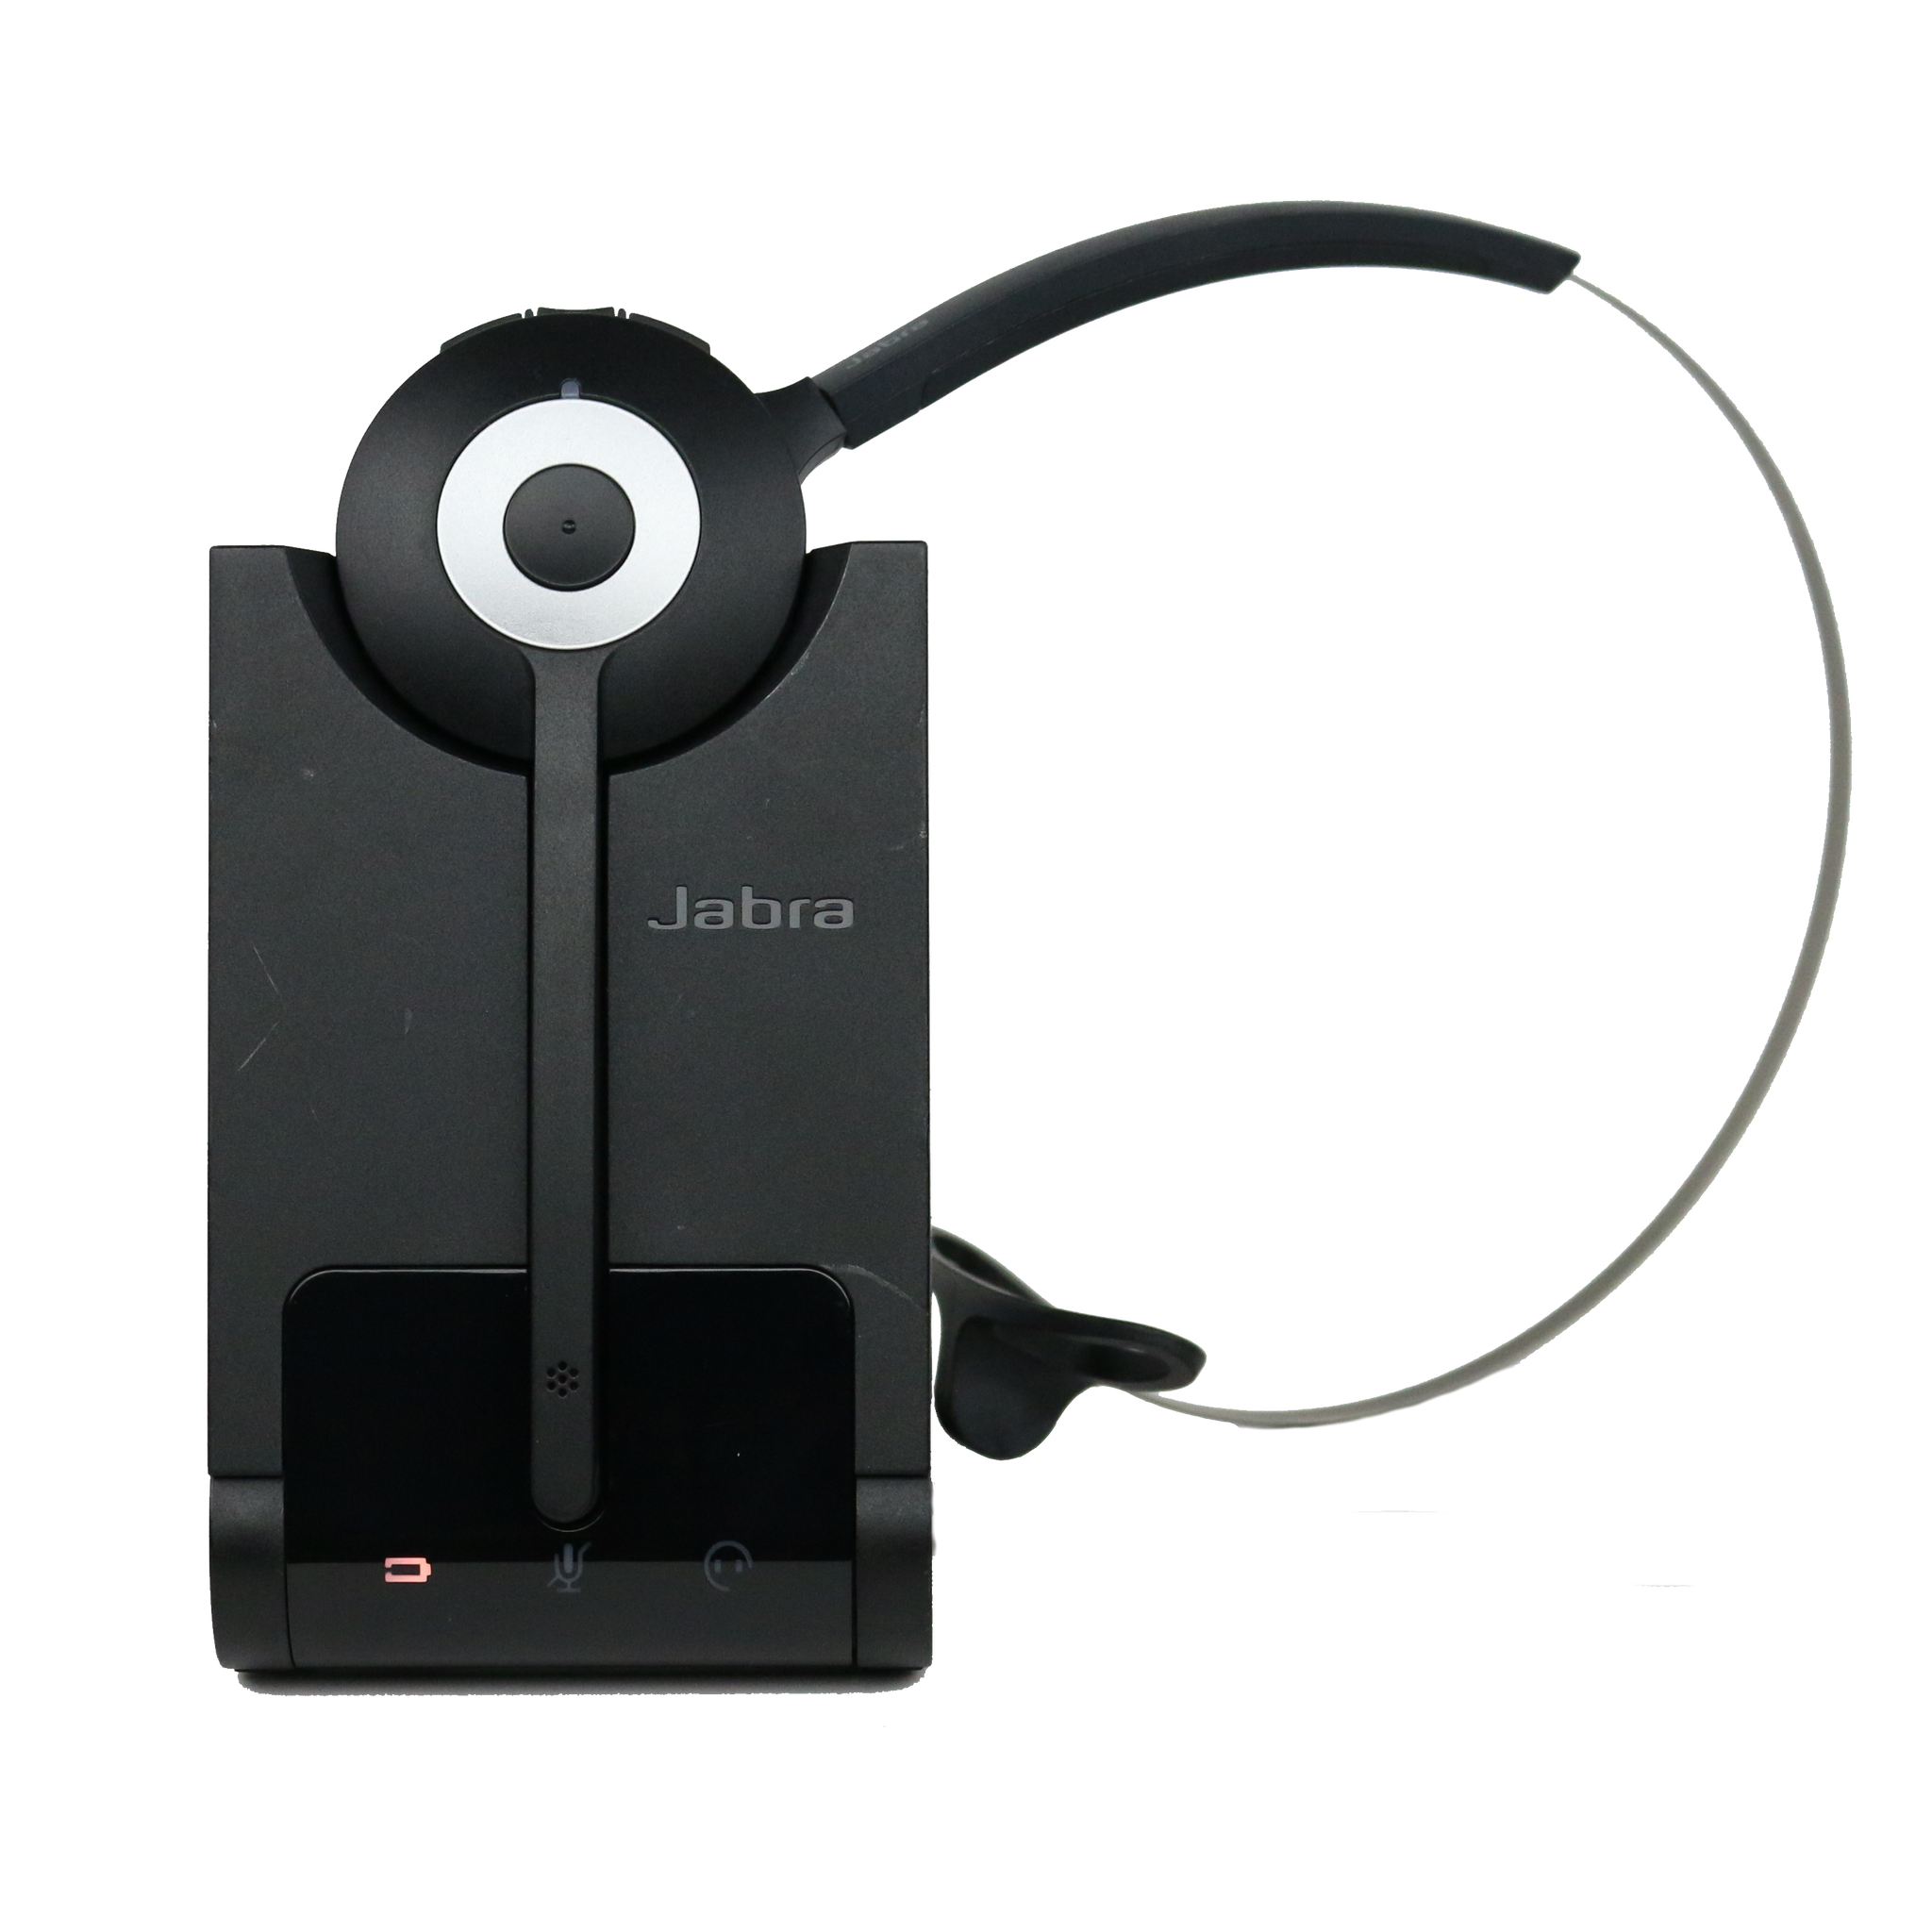 Jabra PRO 930 MONO USB Wireless Headset – Renewed Headsets